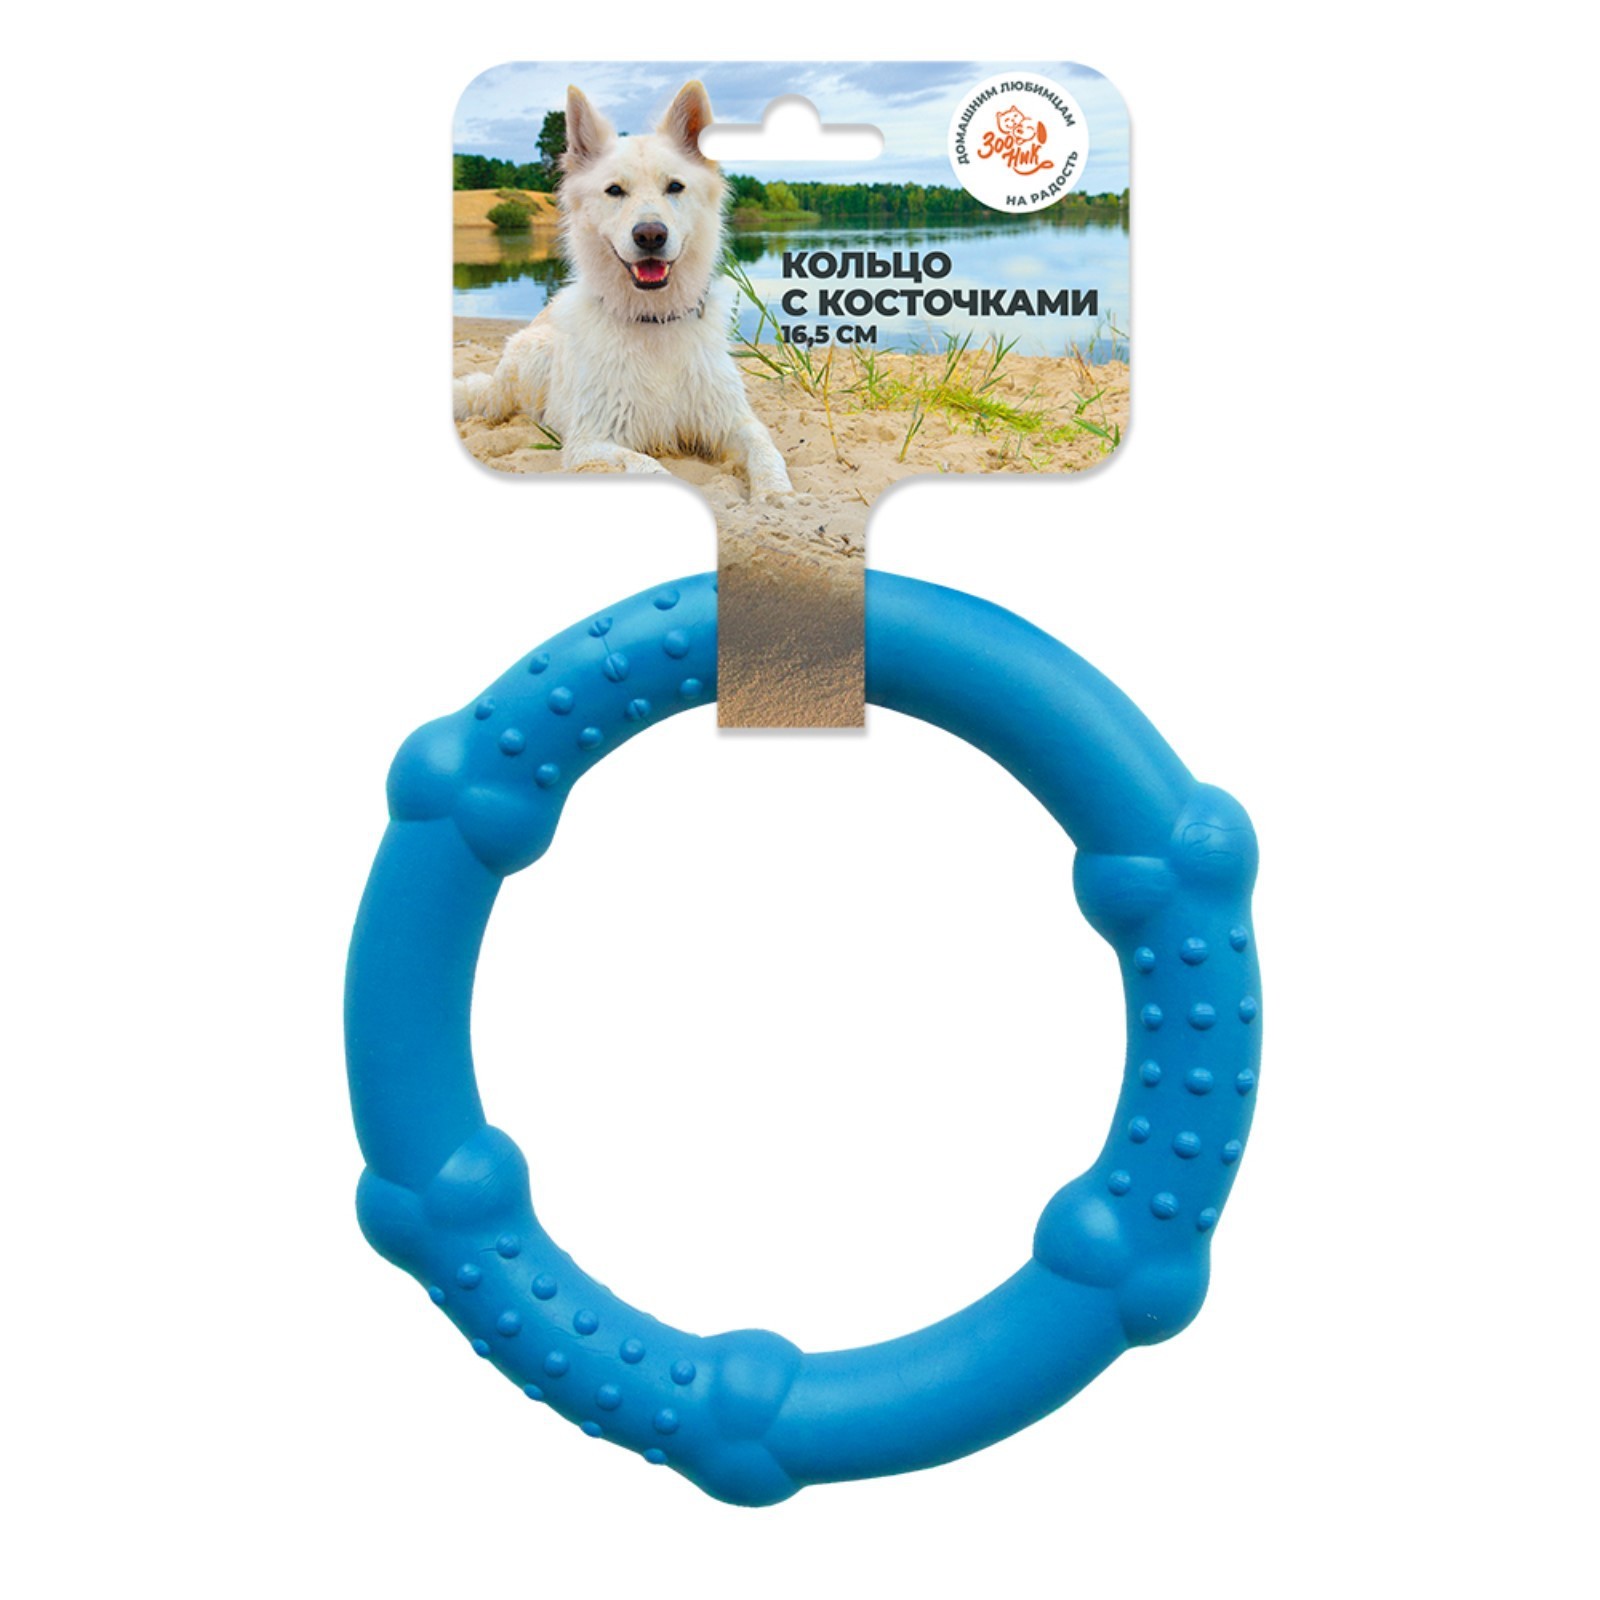 

Игрушка для собак Зооник Кольцо с косточками синее 16,5 см